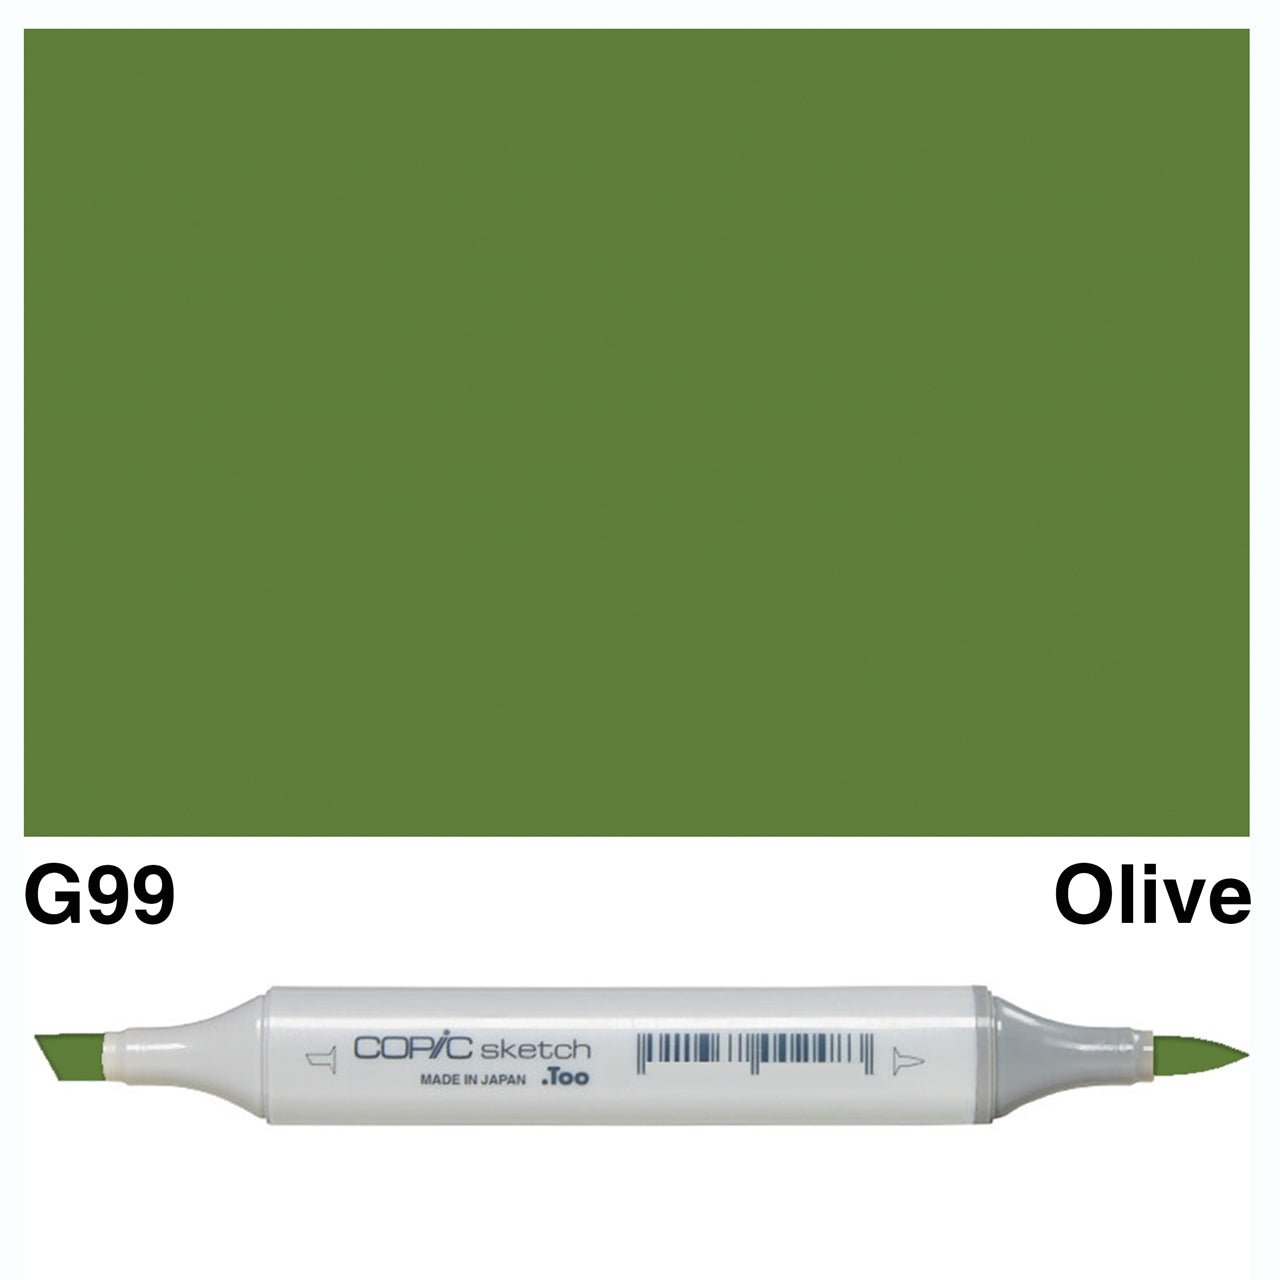 Copic Sketch G99 Olive - theartshop.com.au